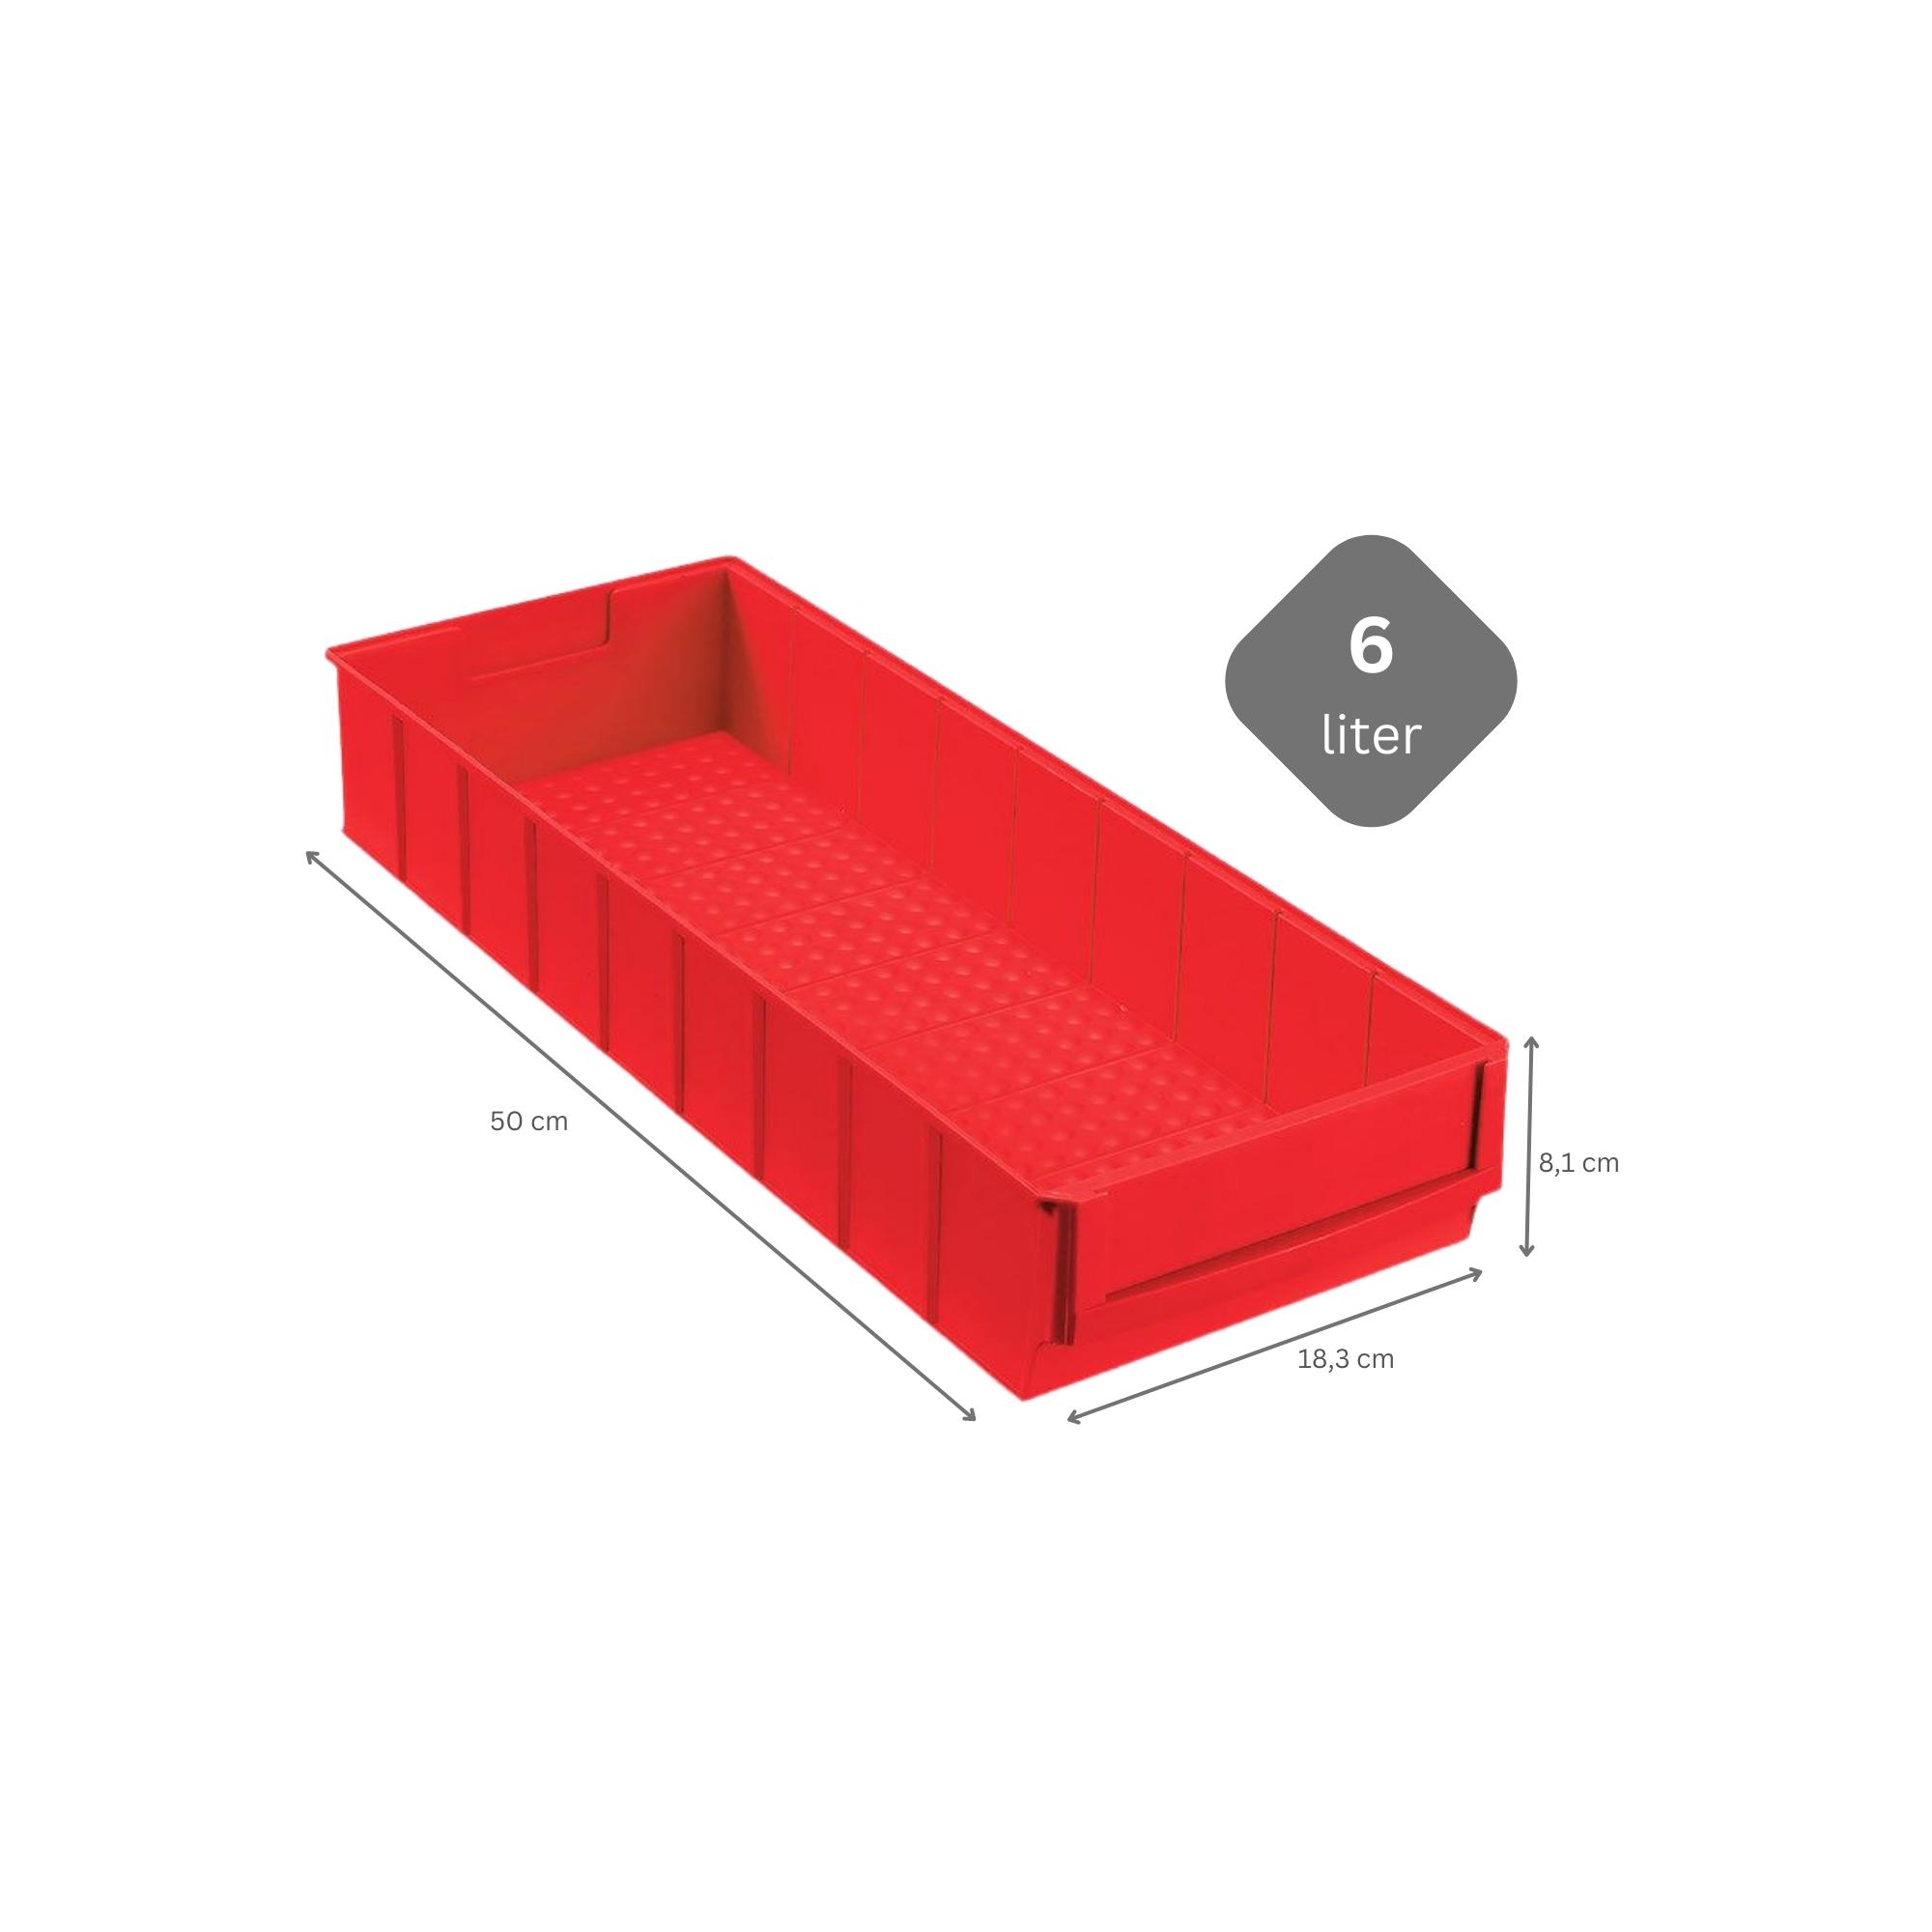 Rote Industriebox 500 B | HxBxT 8,1x18,3x50cm | 6 Liter| Sichtlagerkasten, Sortimentskasten, Sortimentsbox, Kleinteilebox